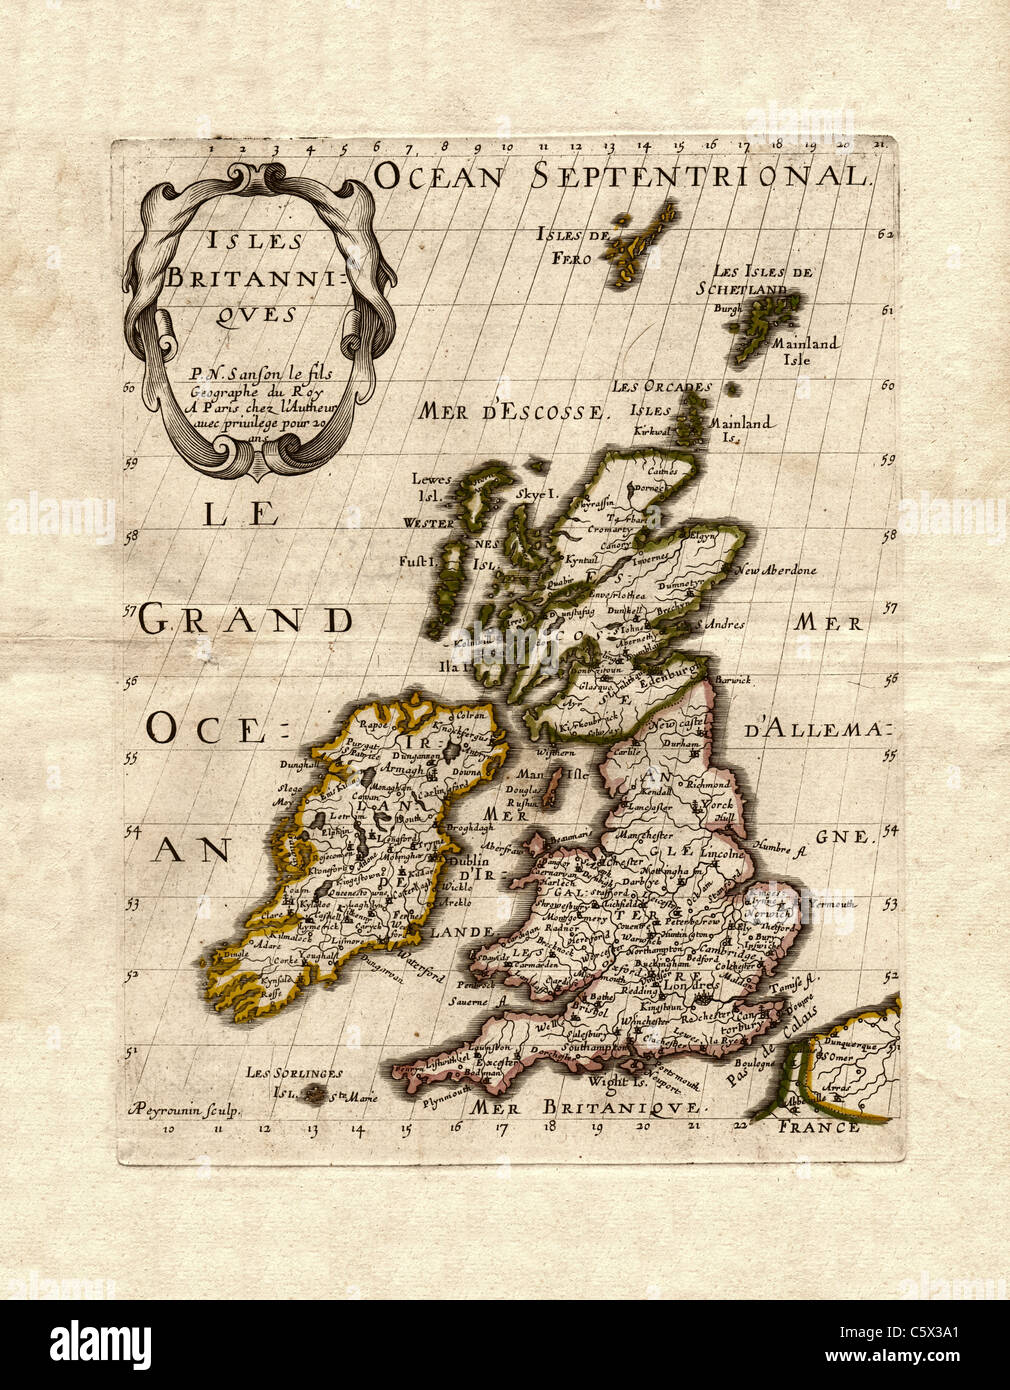 Isles Britanniques, carte des îles britanniques, par Nicolas fils Sanson, 1700 Banque D'Images